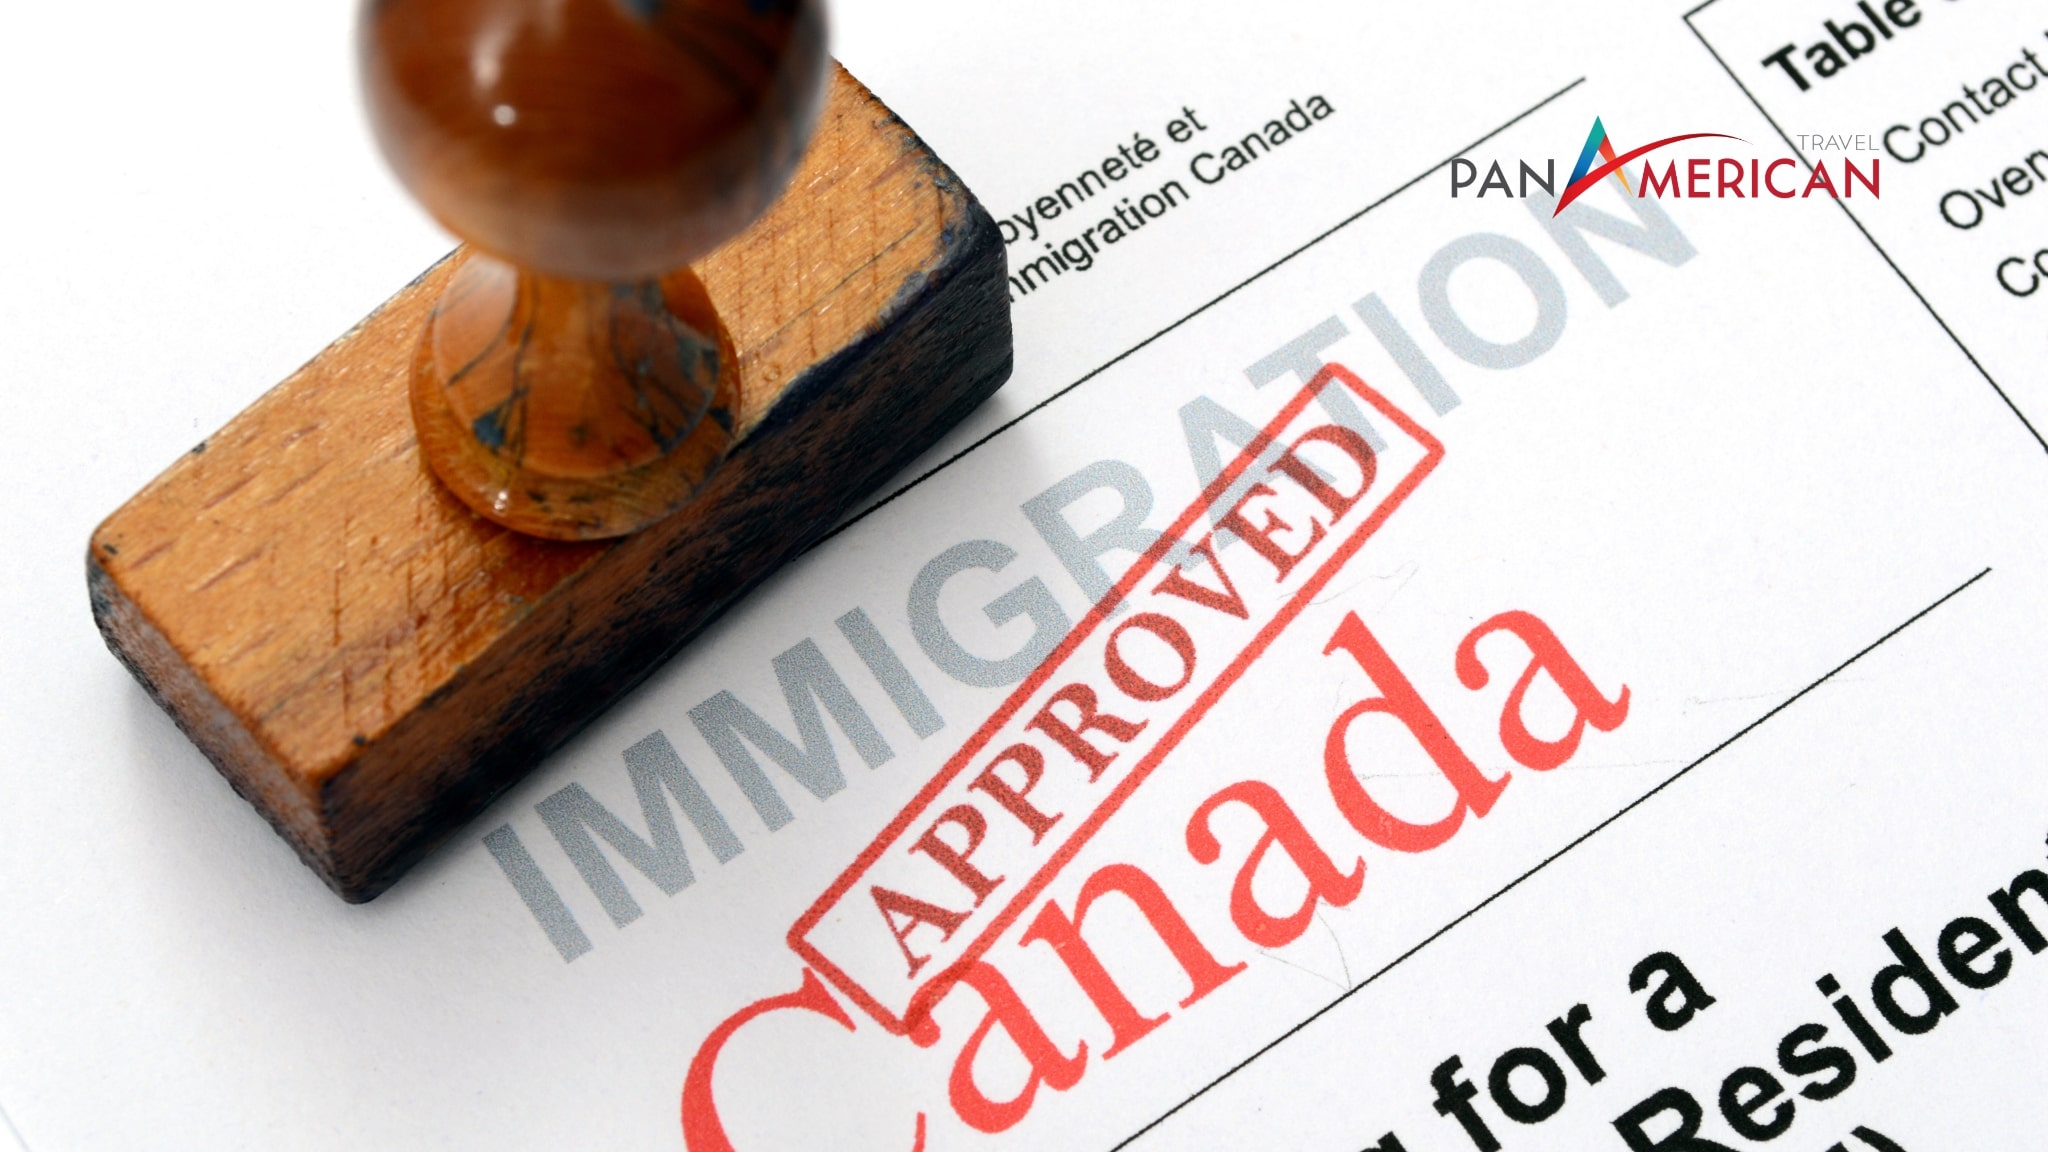 Thủ tục xin supervisa Canada phức tạp hơn so với visa du lịch thông thường